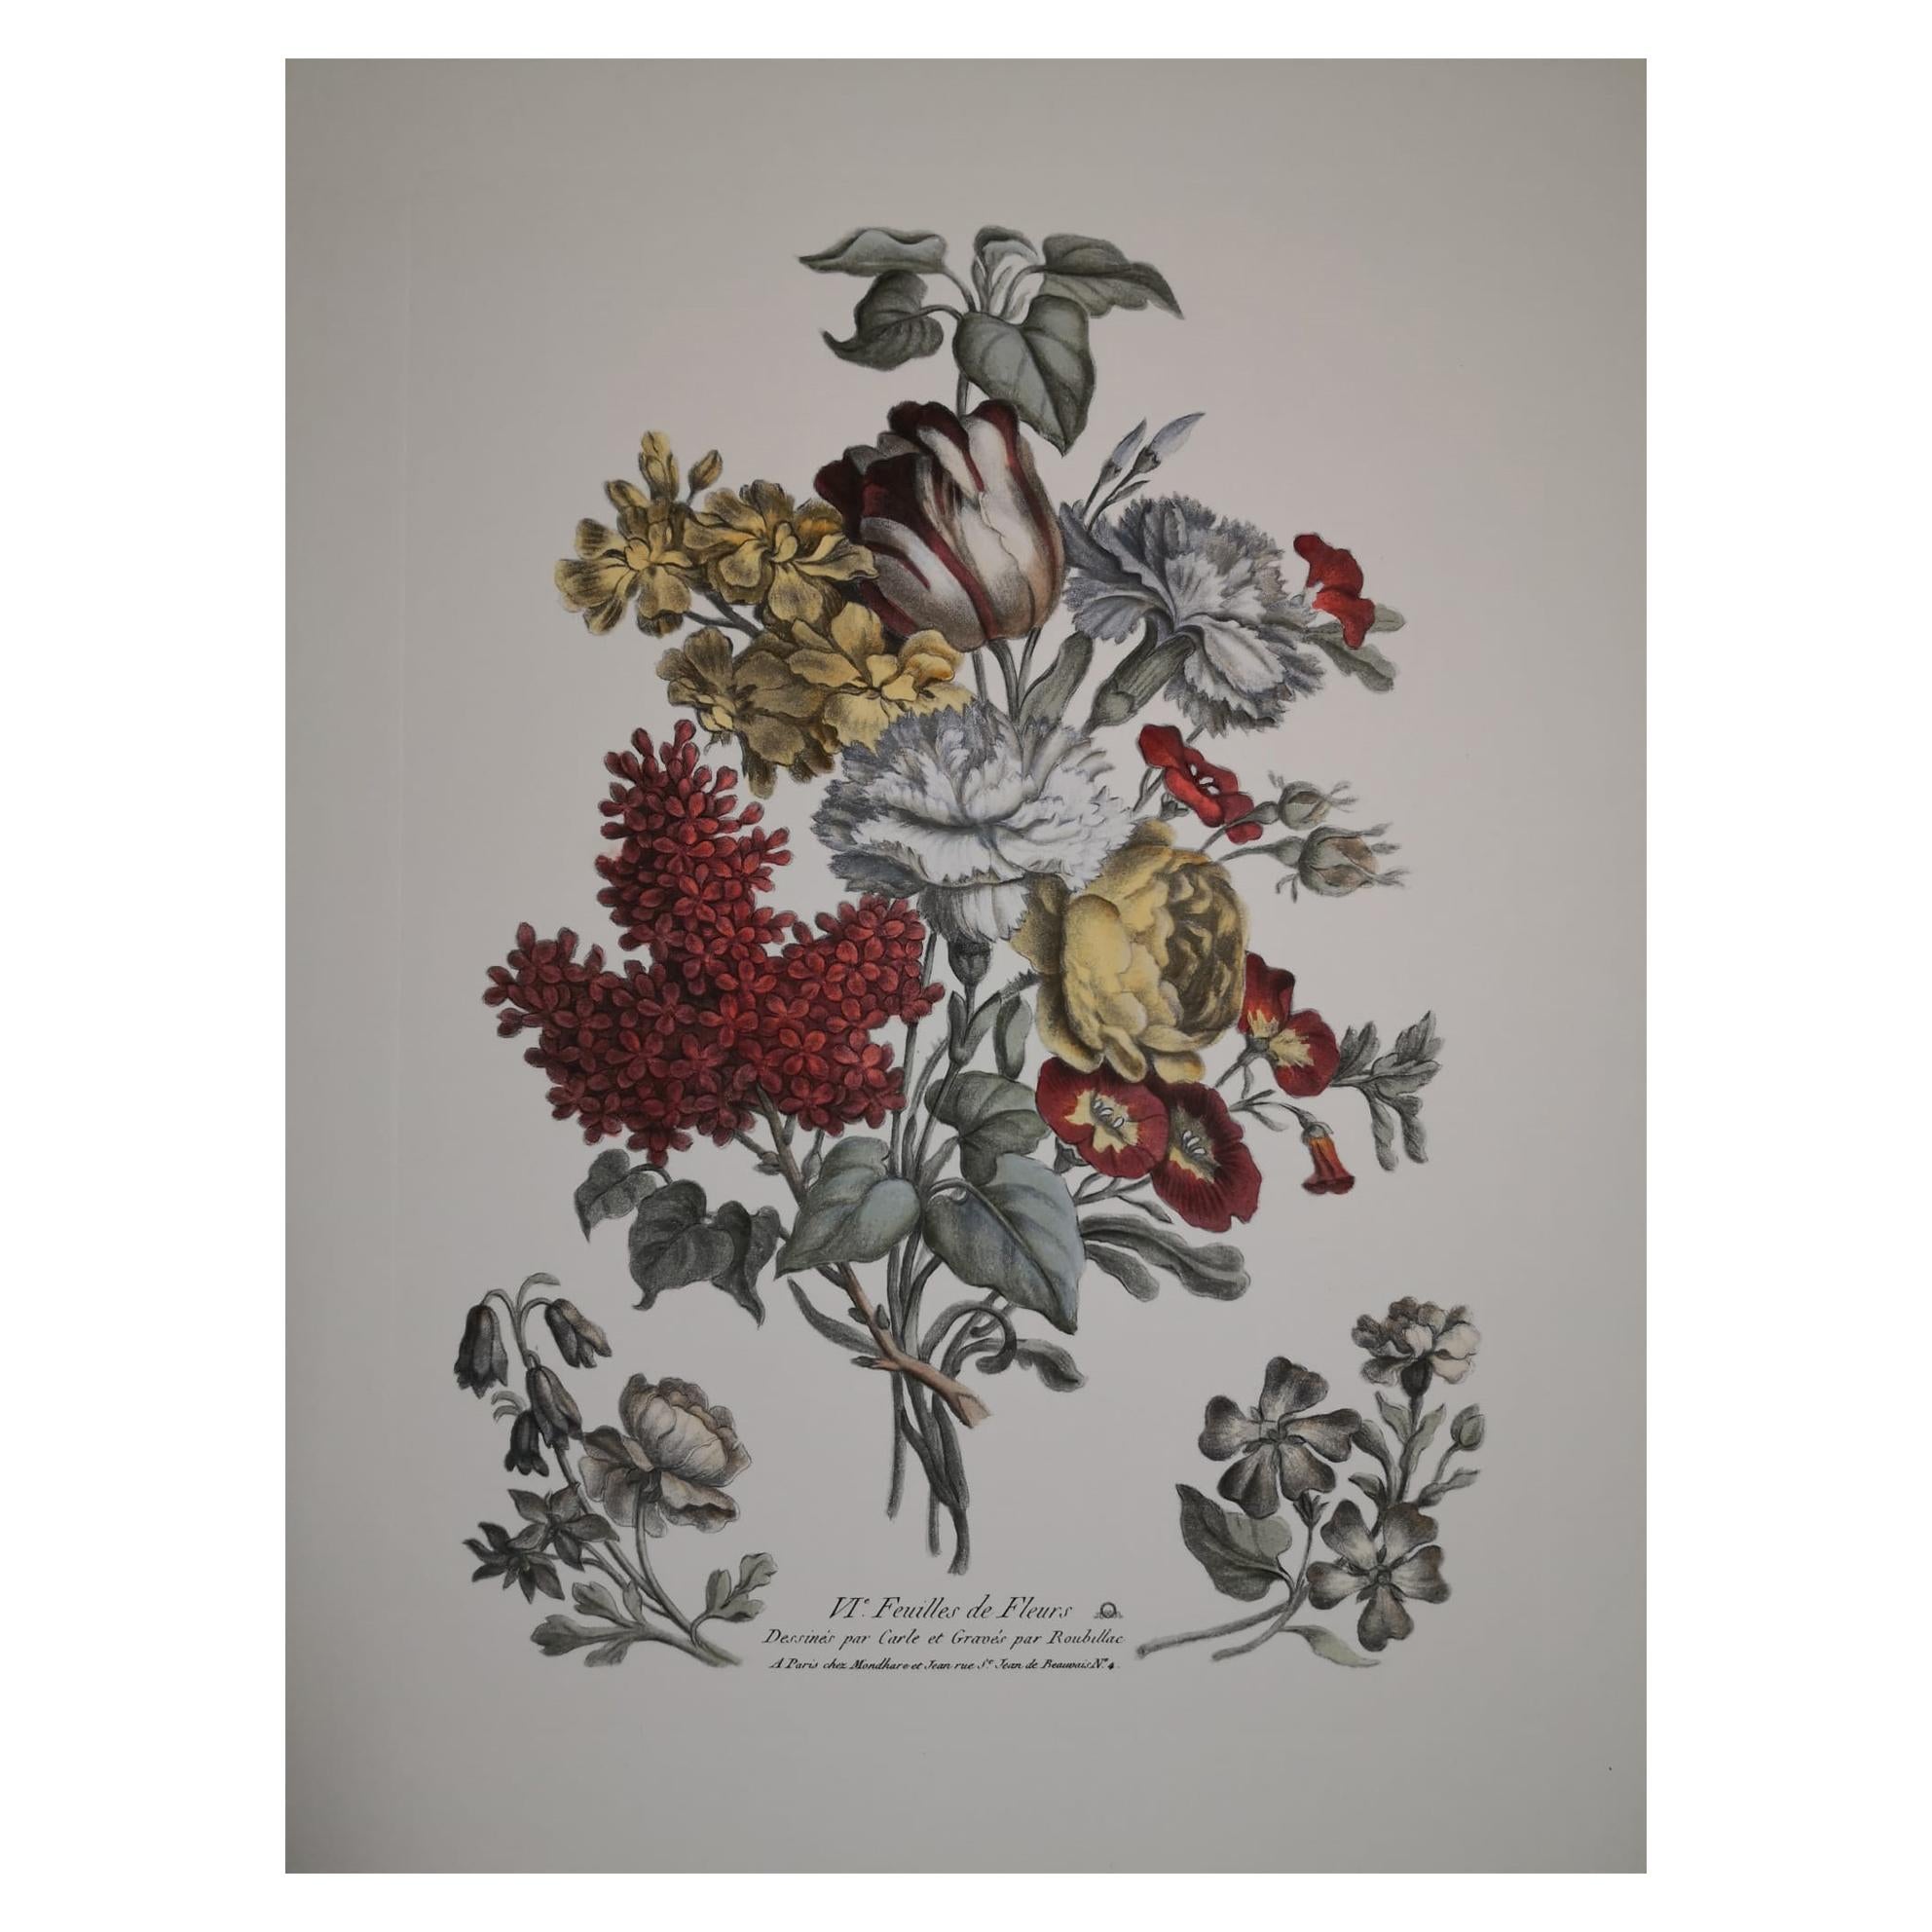 Italian Contemporary Hand Painted Botanical Print  "VI° Feuilles de Fleurs" For Sale